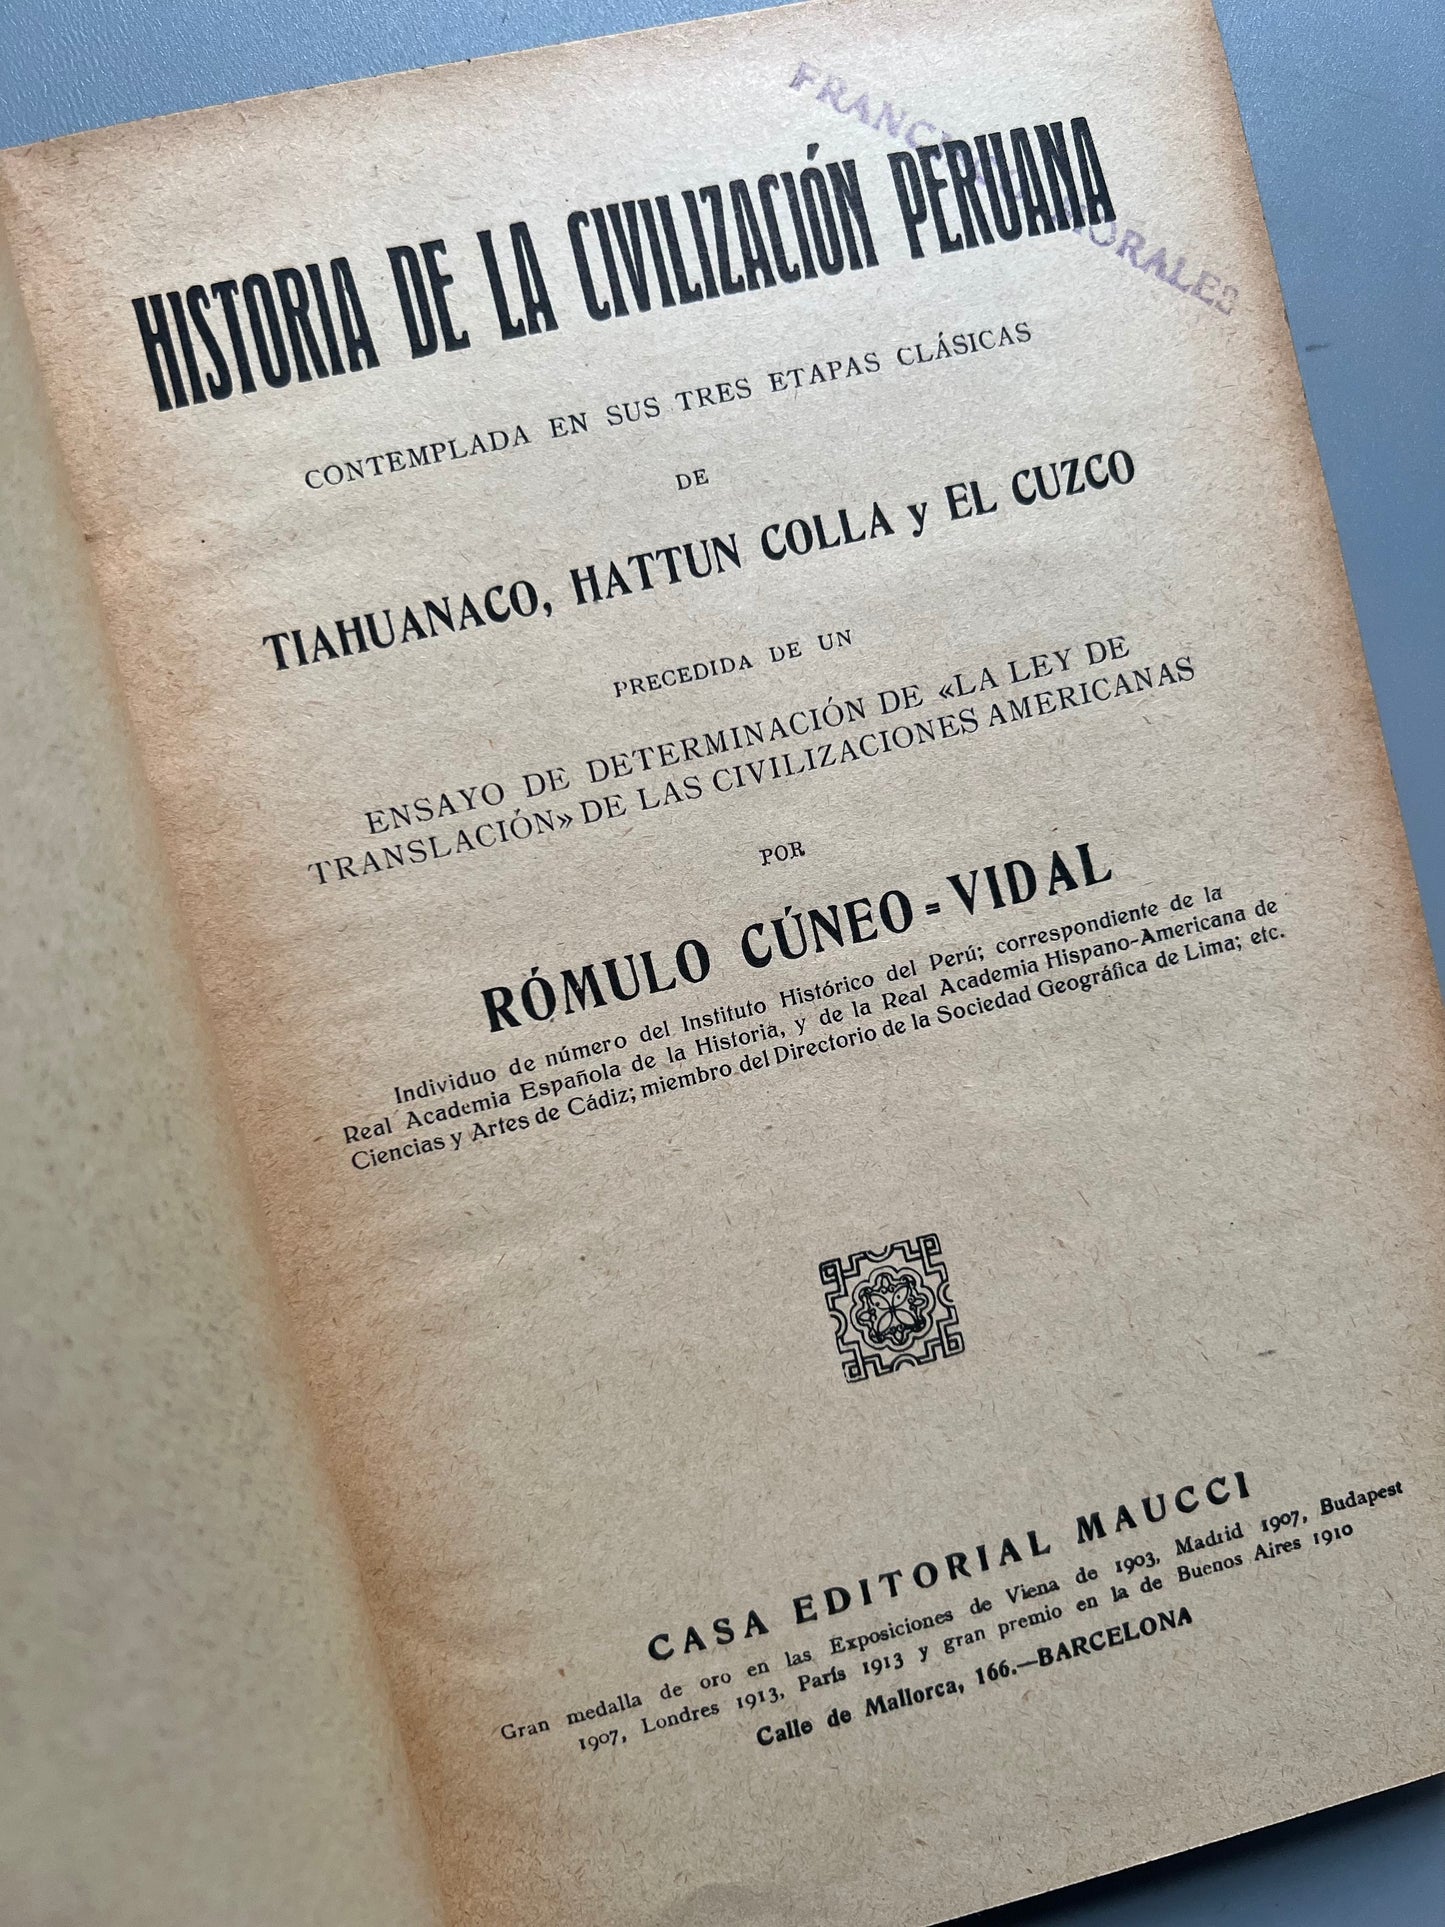 Historia de la civilización peruana, Rómulo Cúneo-Vidal - Casa editorial Maucci, ca. 1915